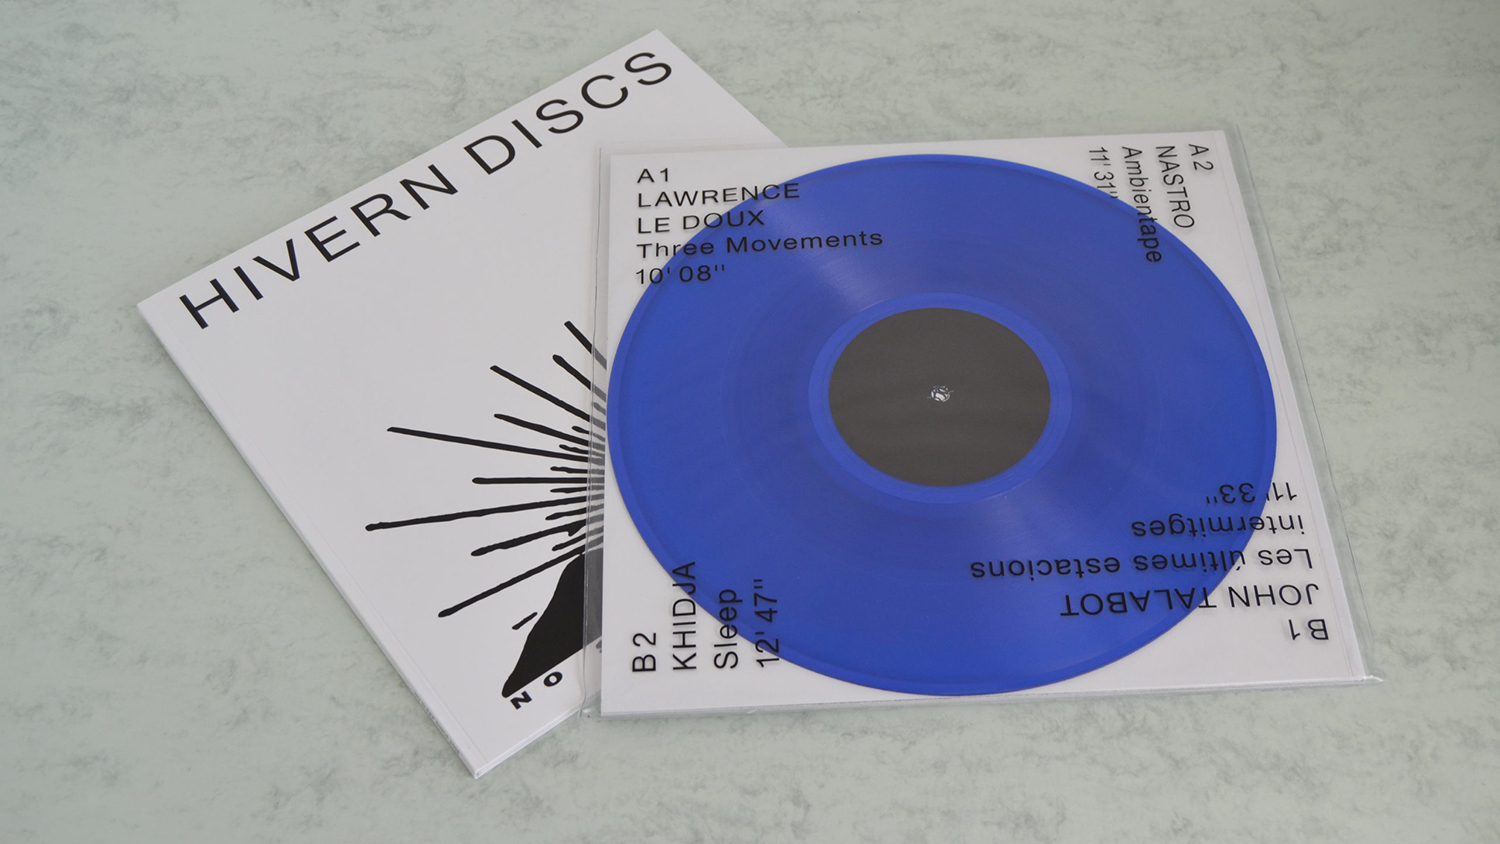 Hivern Discs vinyl record release